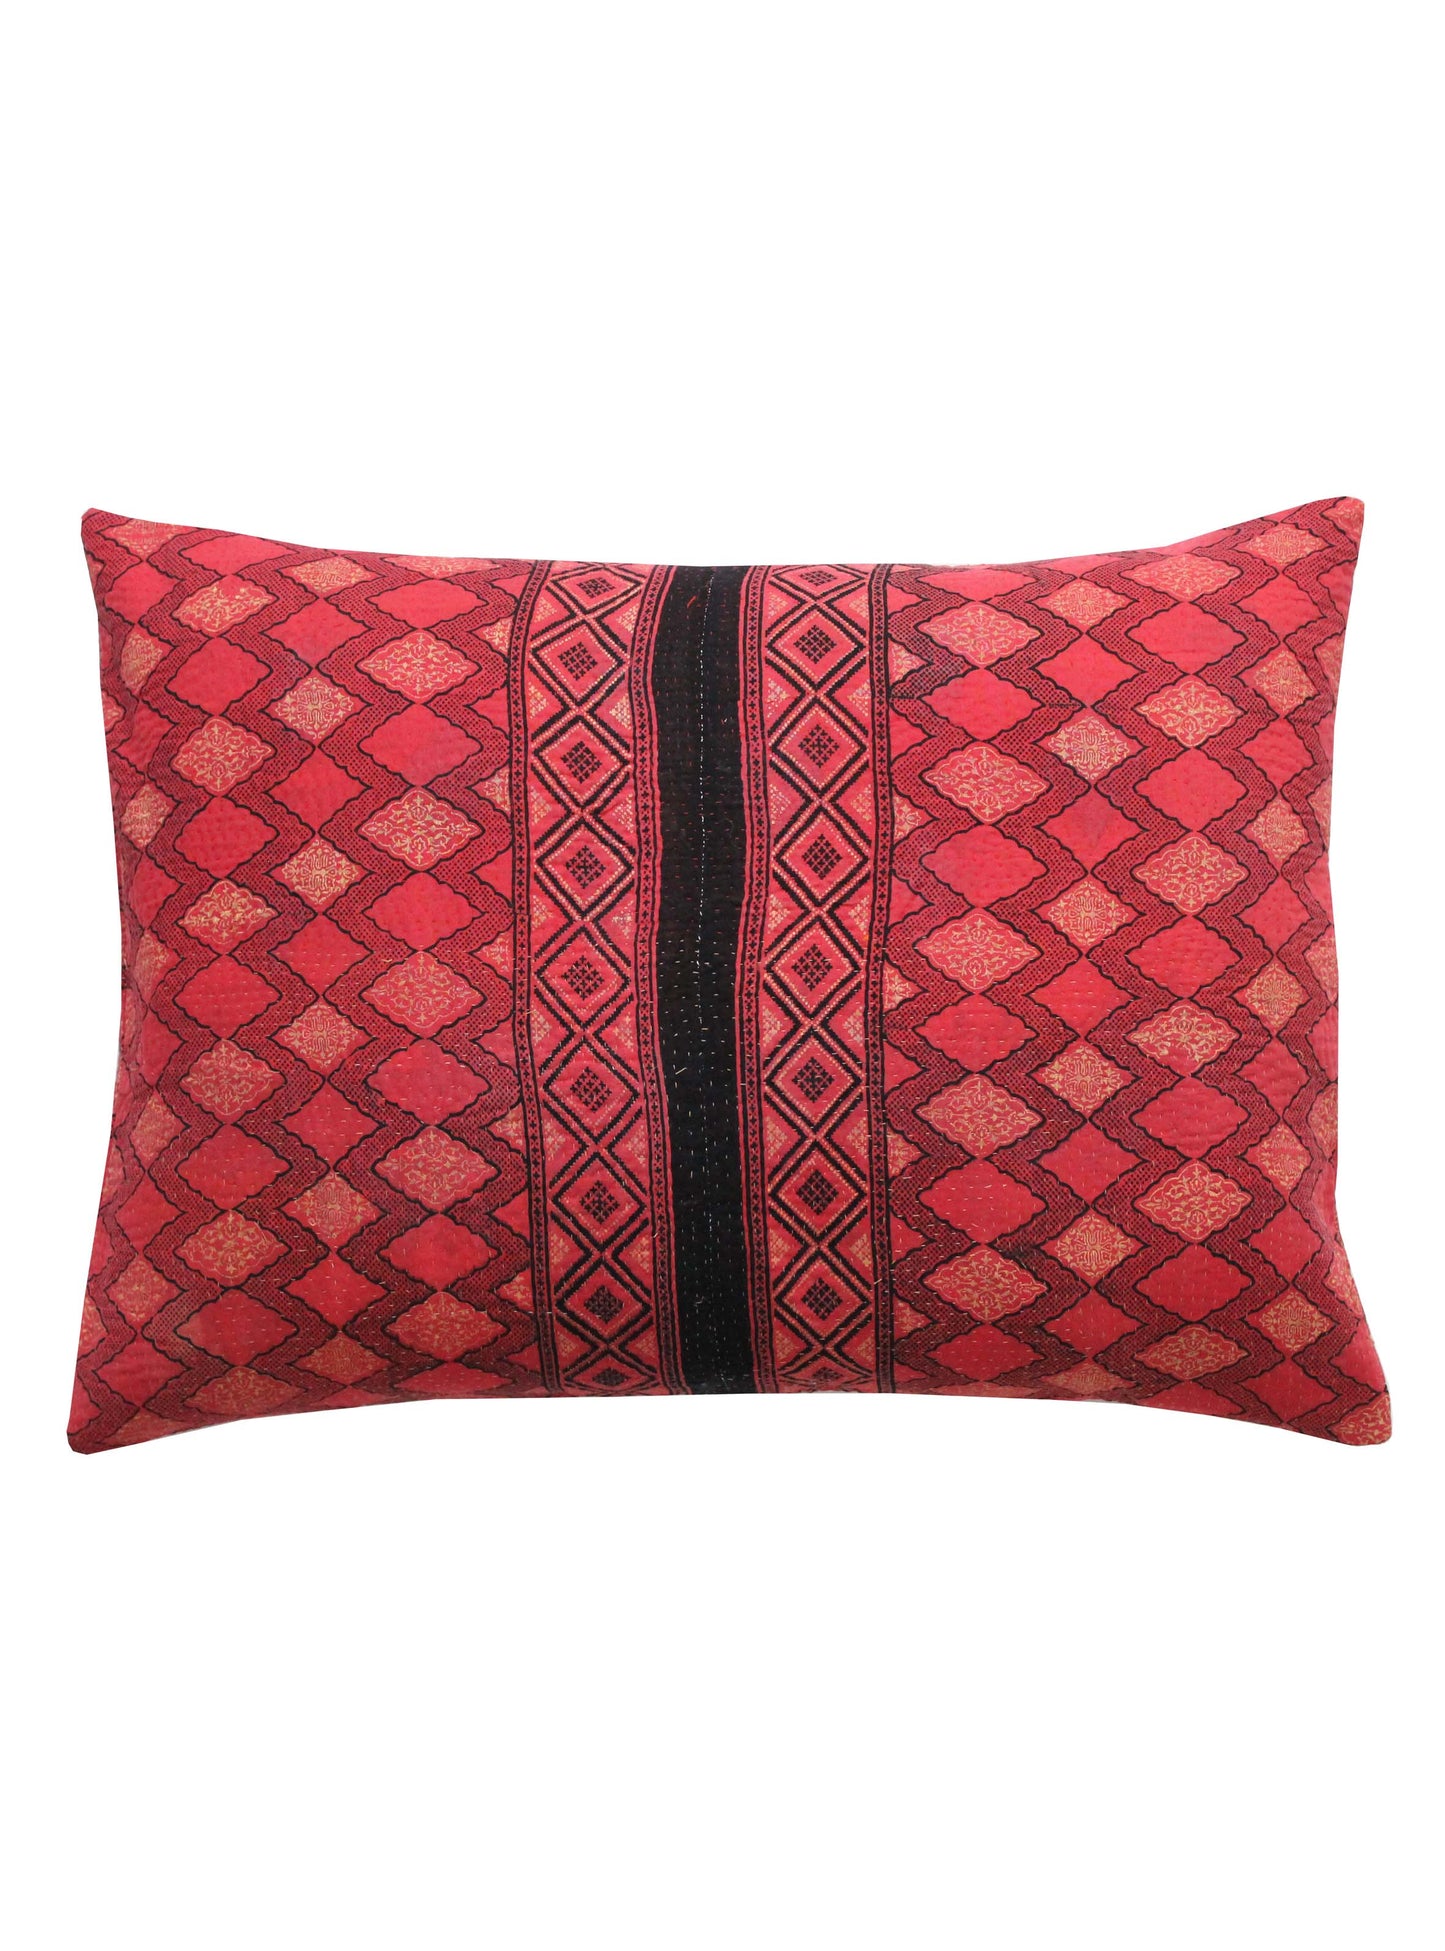 Vintage Kantha Cushions